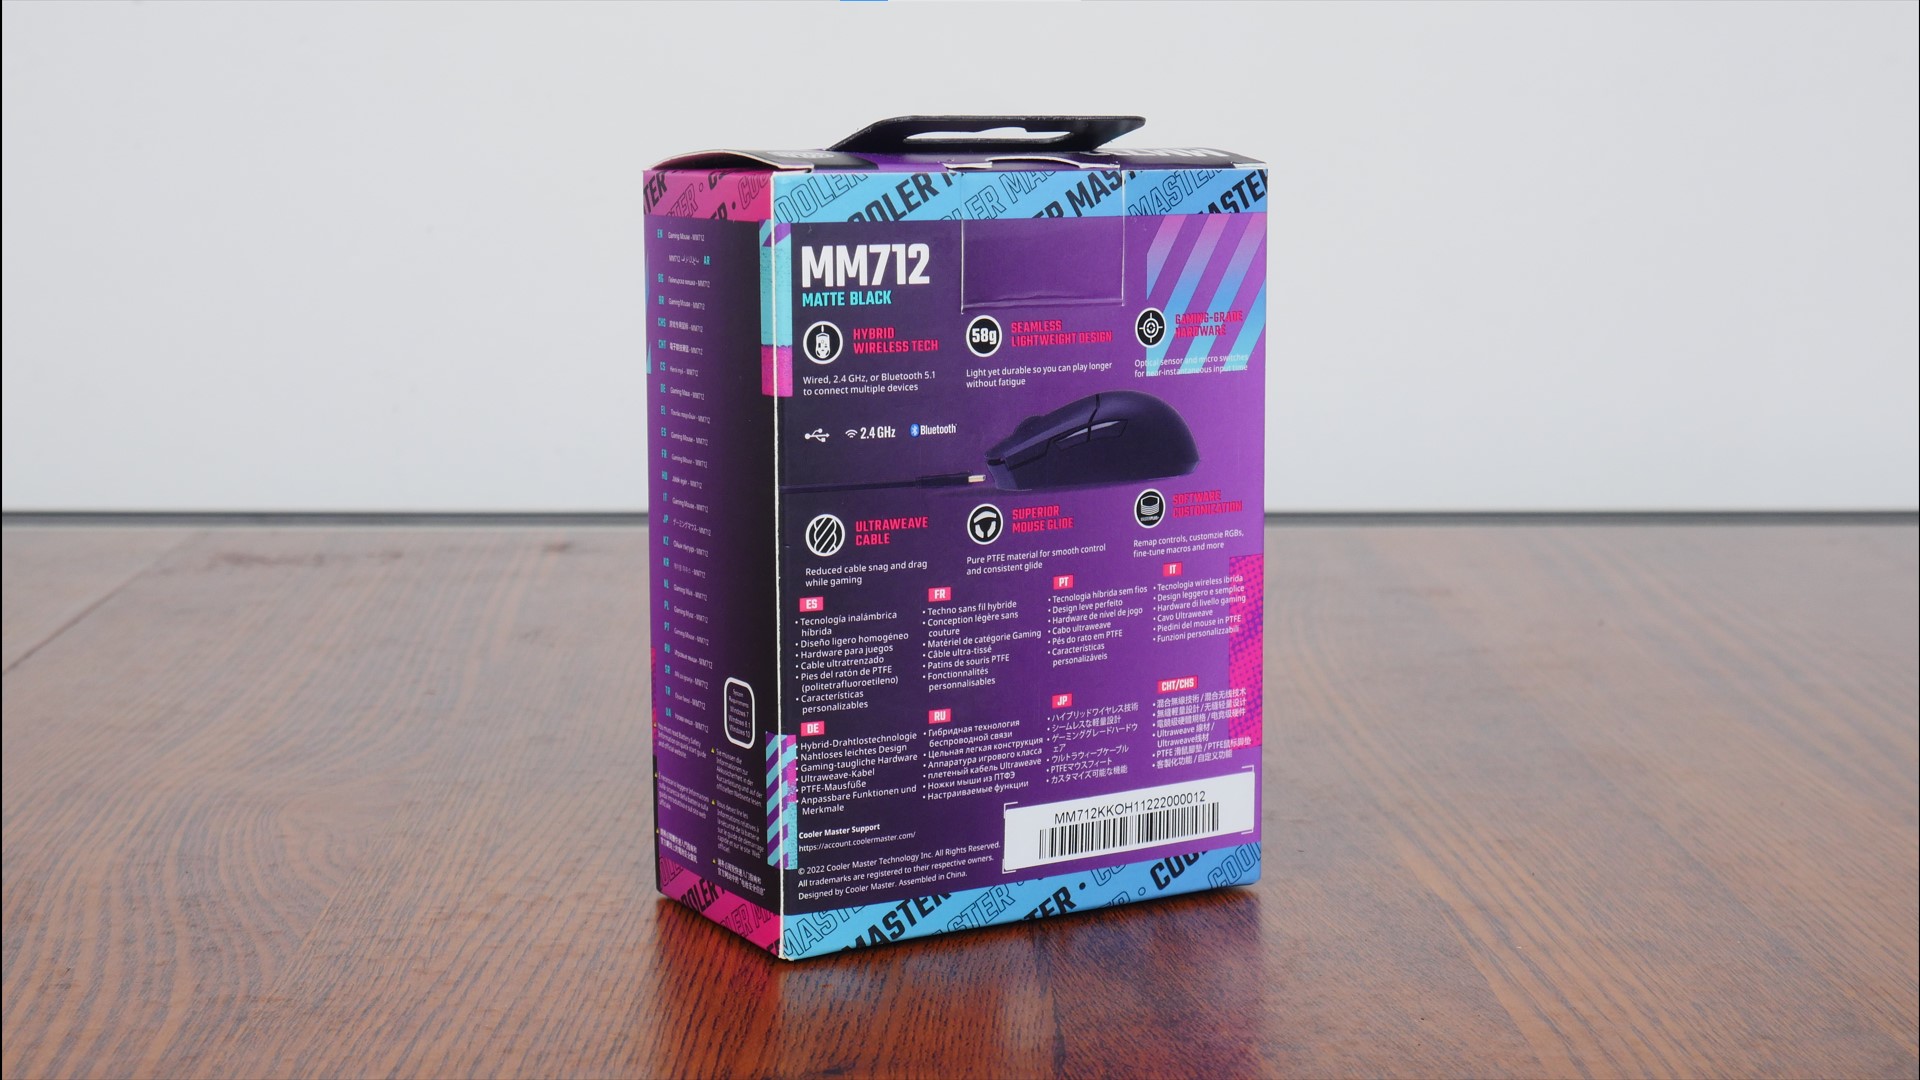 Cooler Master MM712 : Nouvelle souris gaming ultra-légère dévoilée